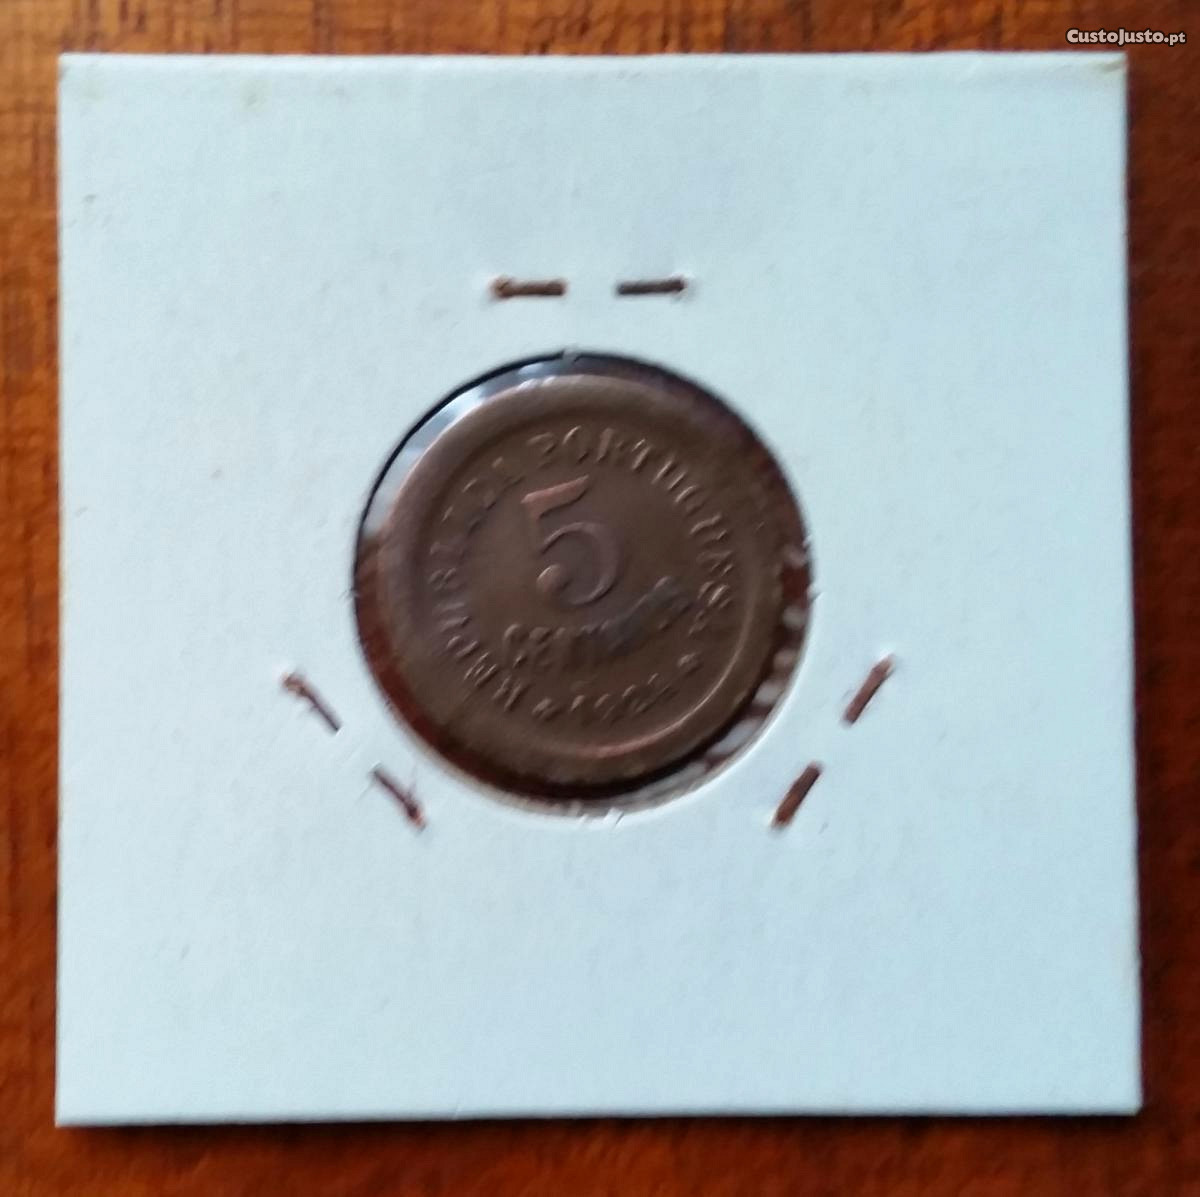 5 Centavos de 1924